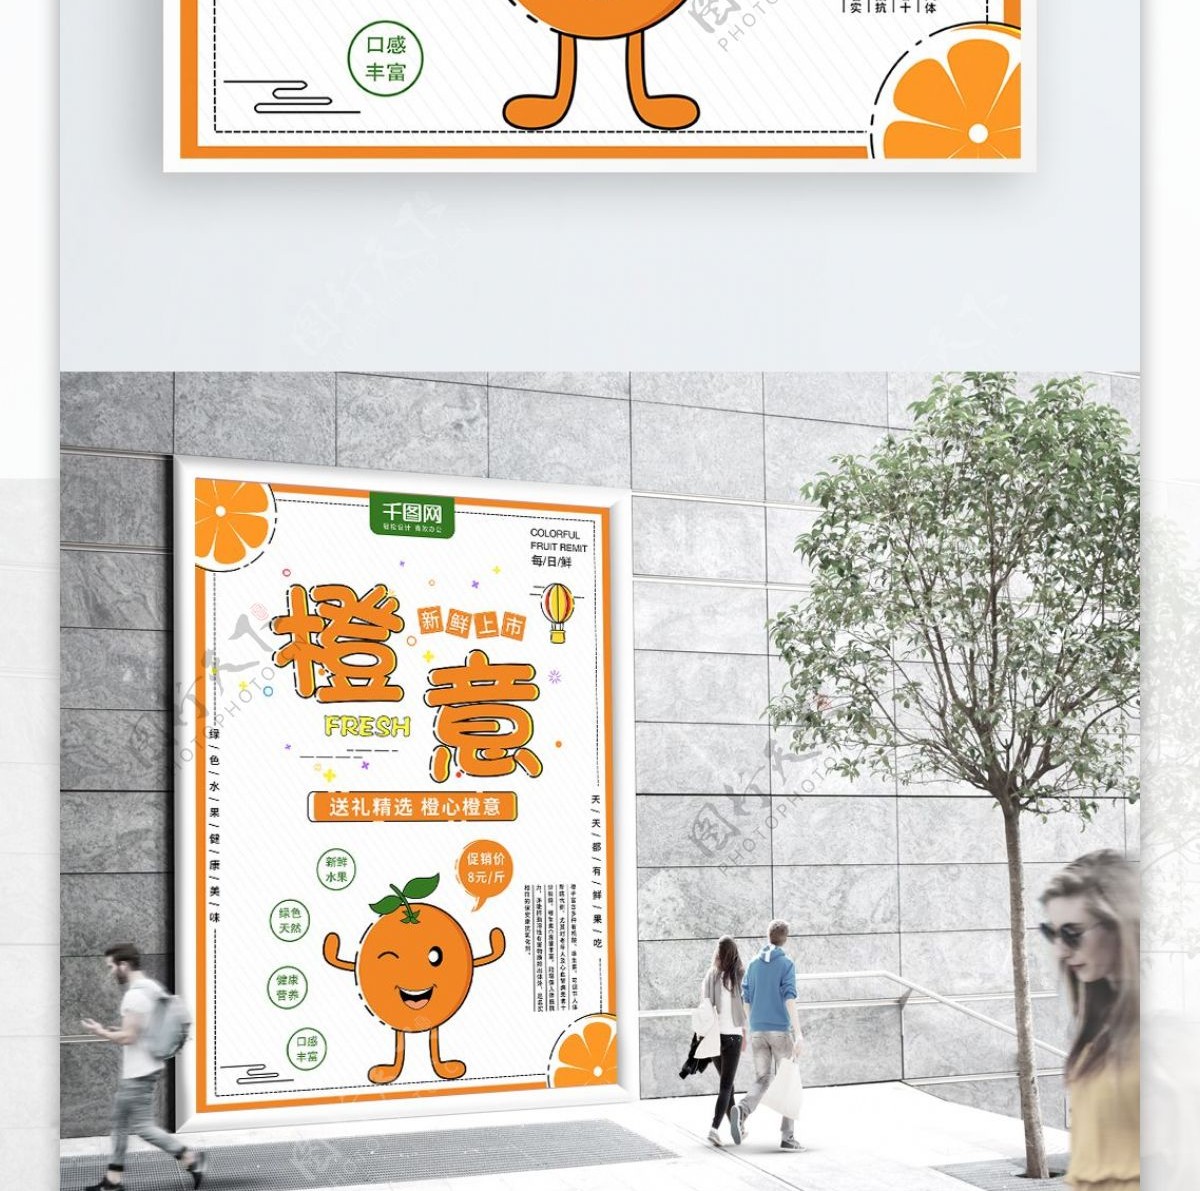 原创MBE风格插画橙意水果促销海报